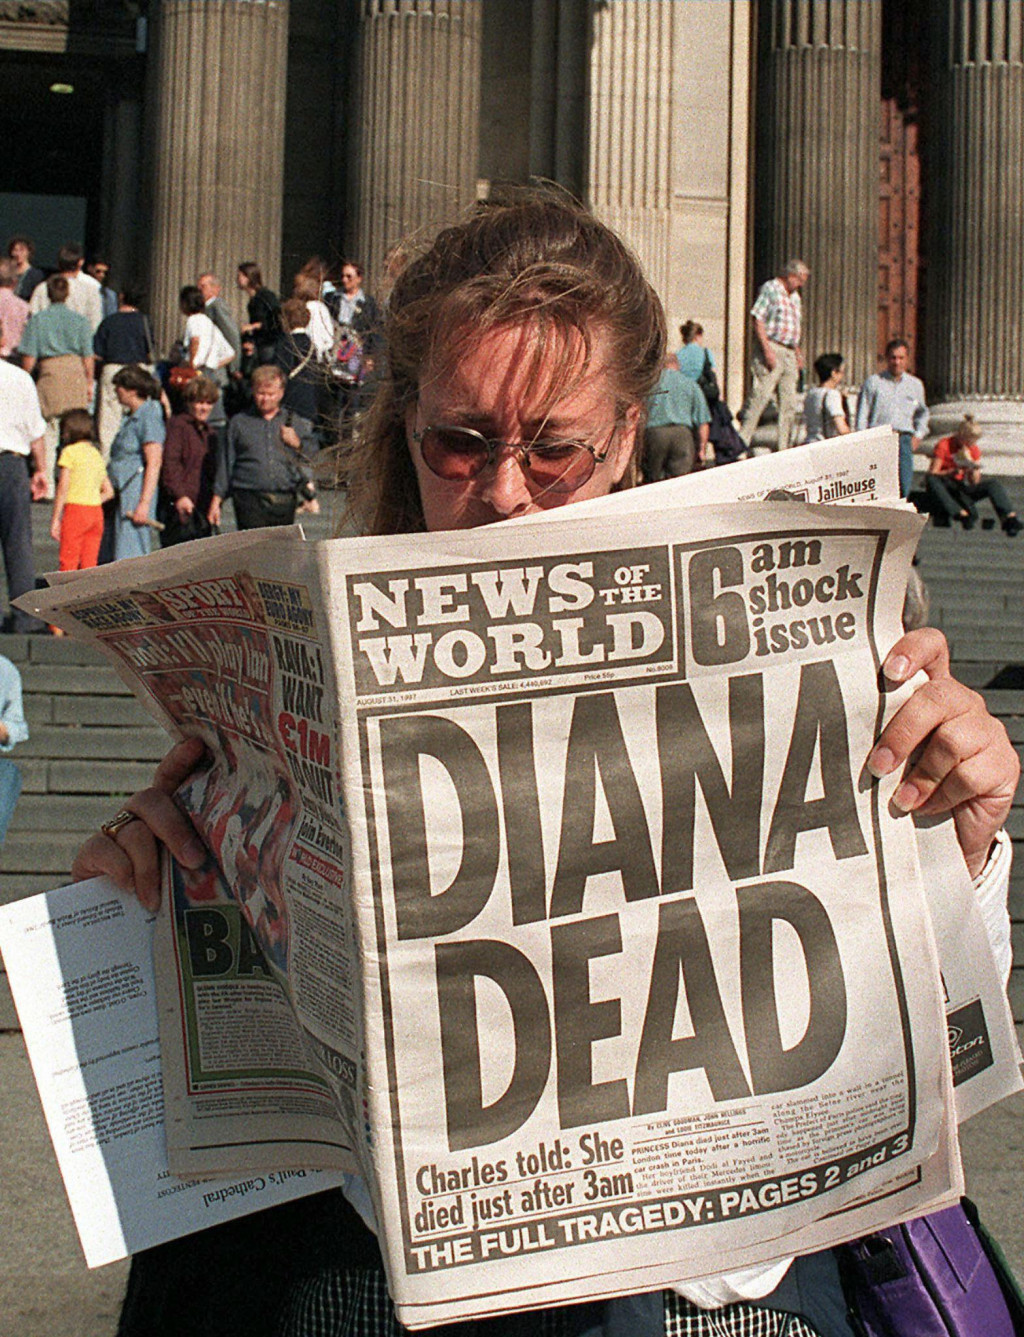 Vijest o Dianinoj smrti potresla je i trese cijeli svijet&lt;br /&gt;
 